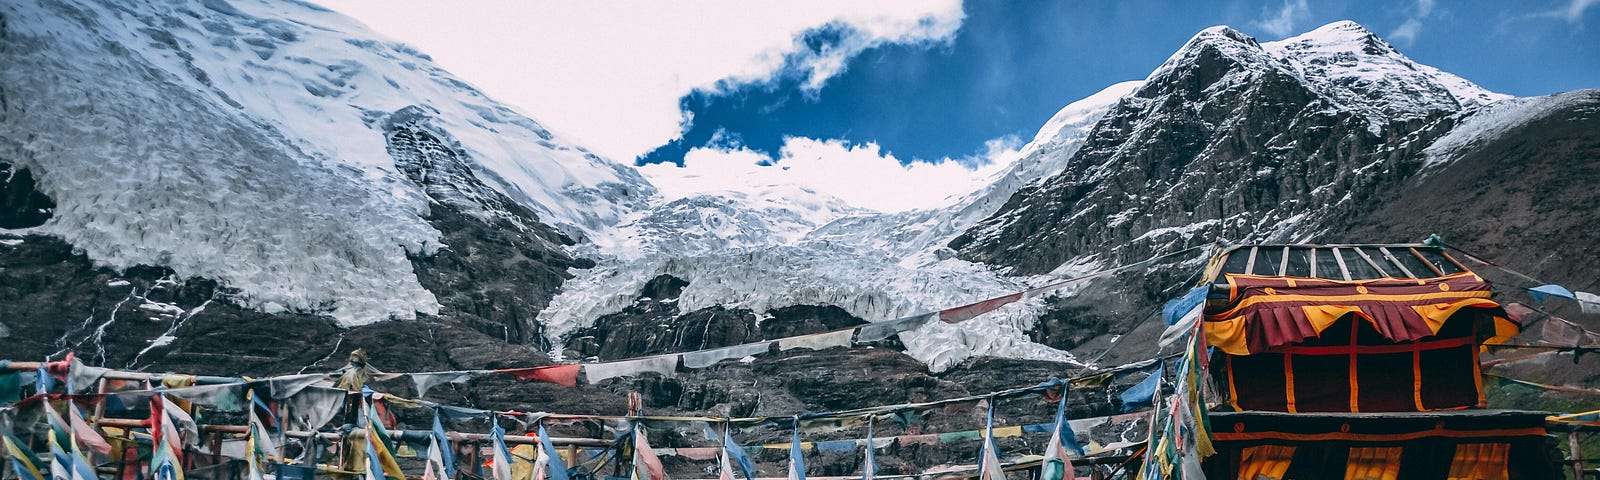 Beautiful Tibetan mountain scenery.